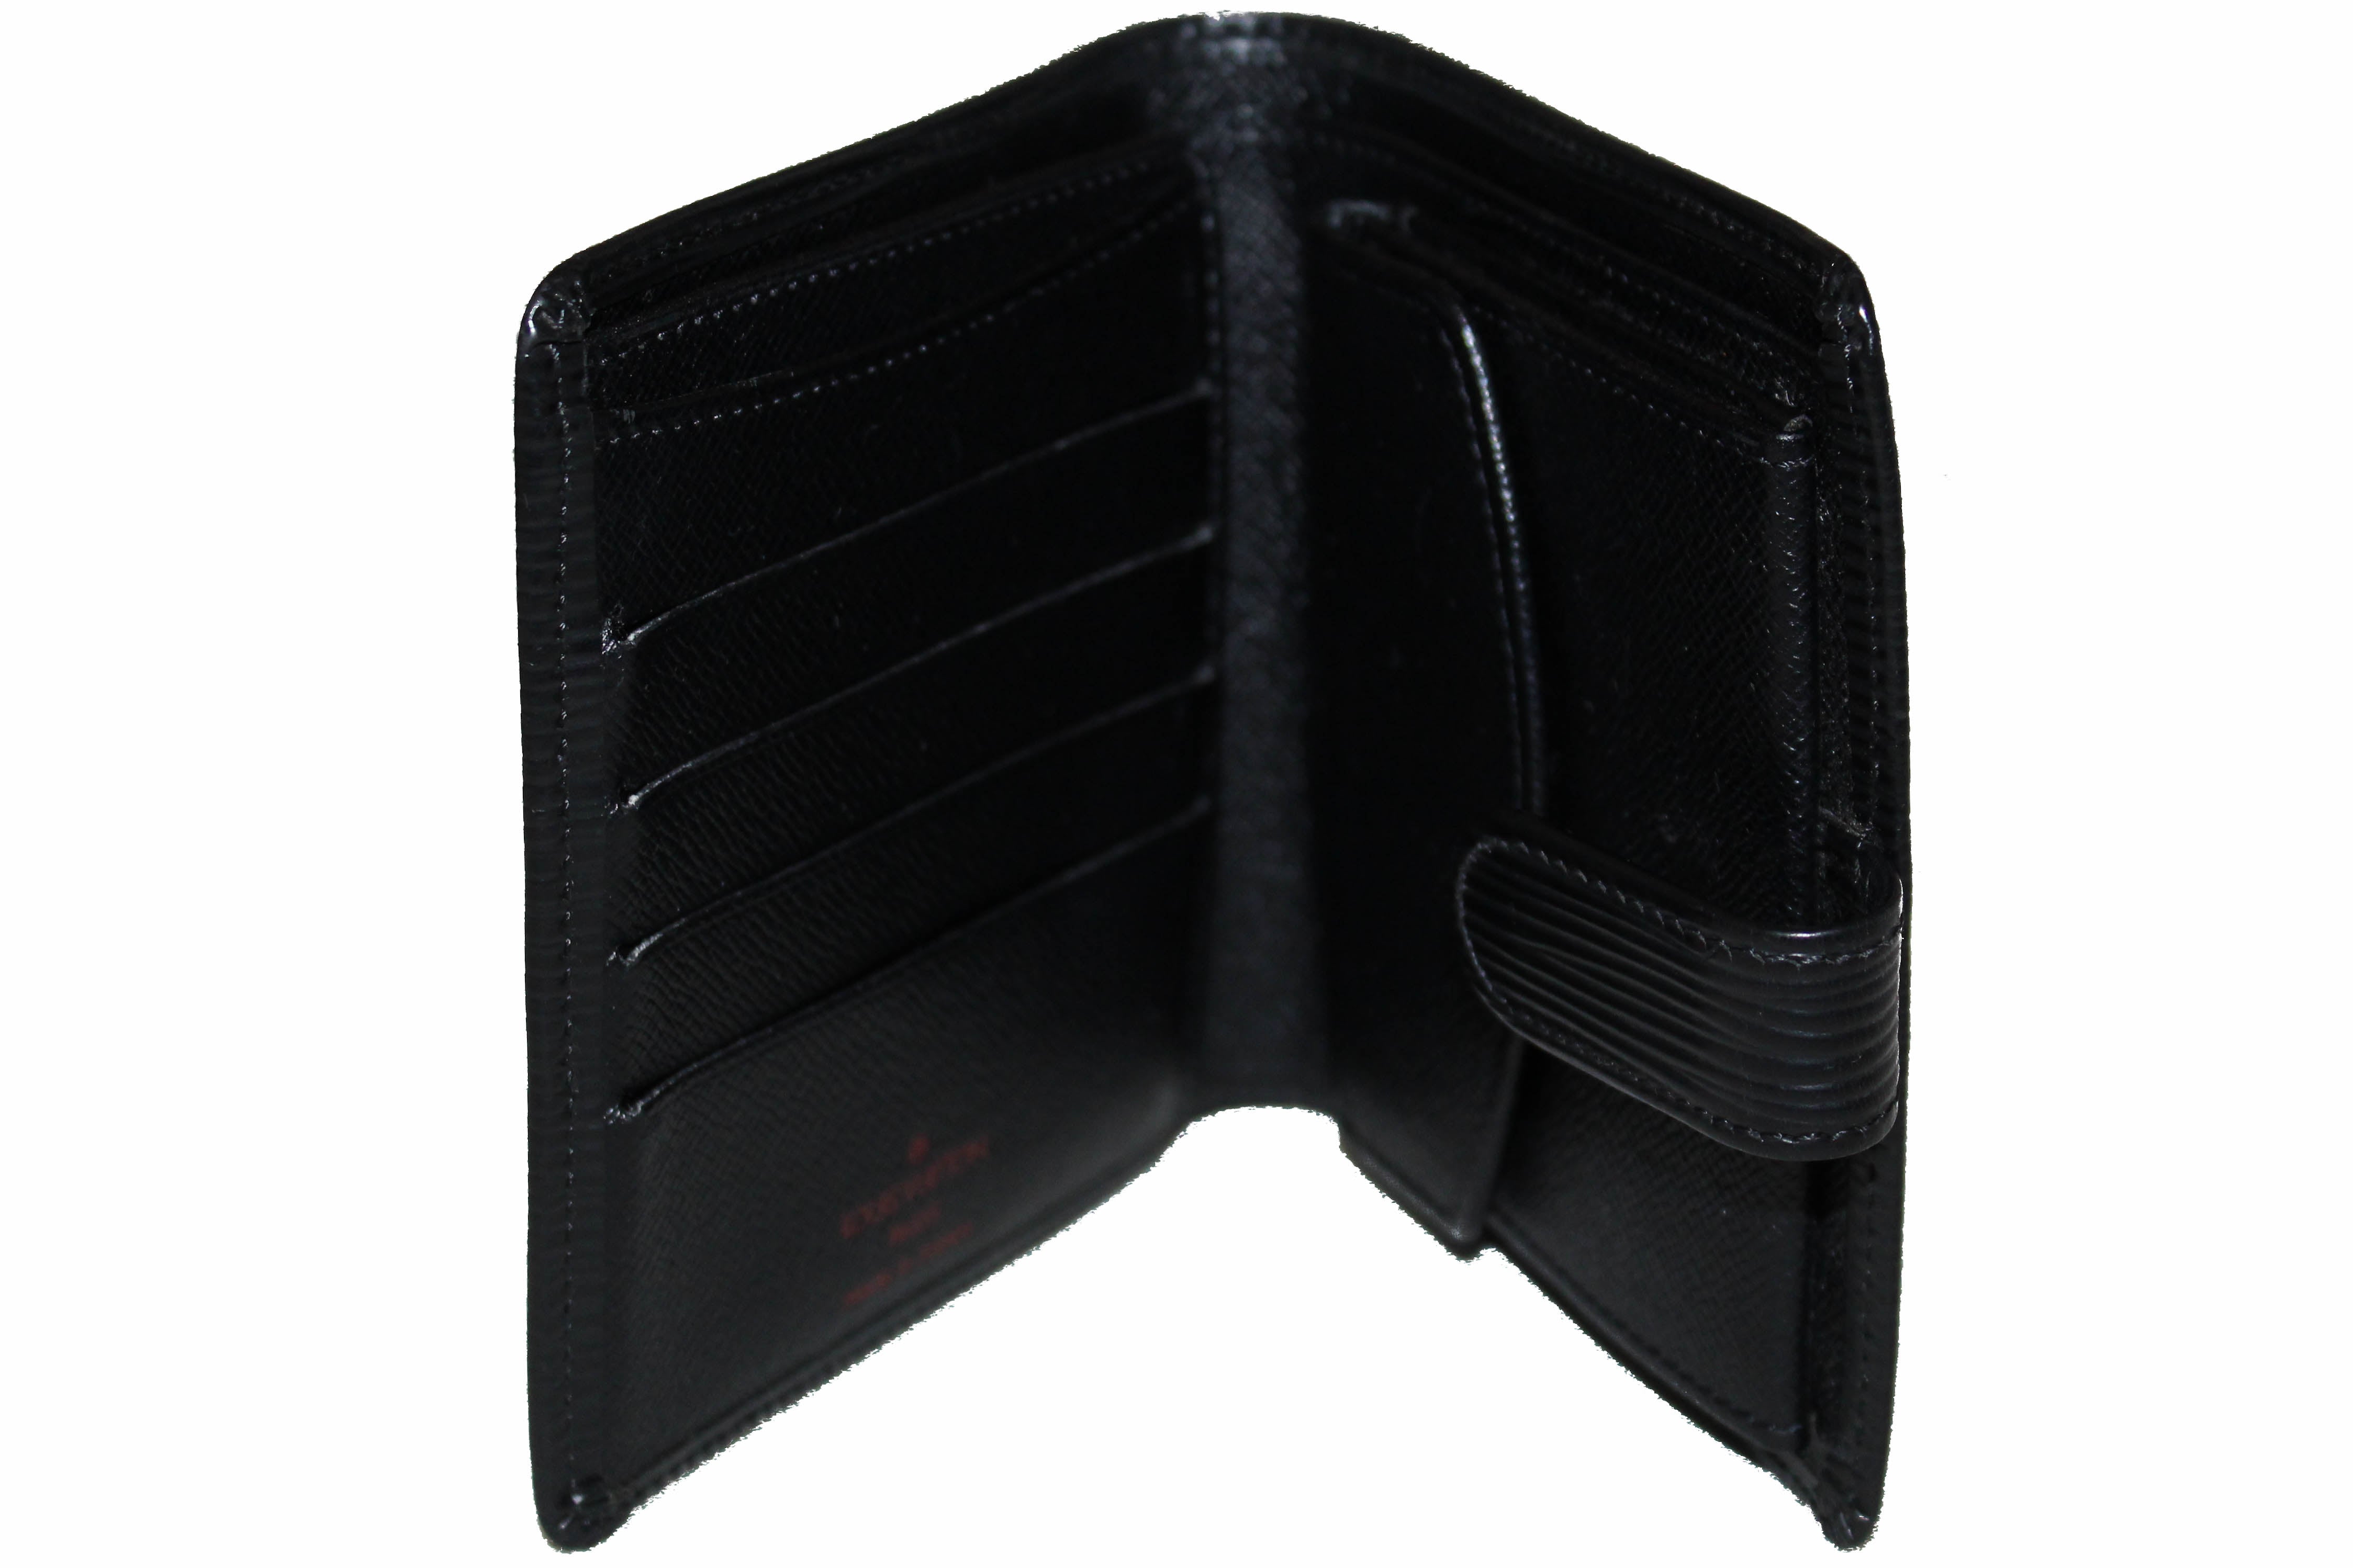 Authentic Louis Vuitton Black Epi Leather Bi-Fold Wallet